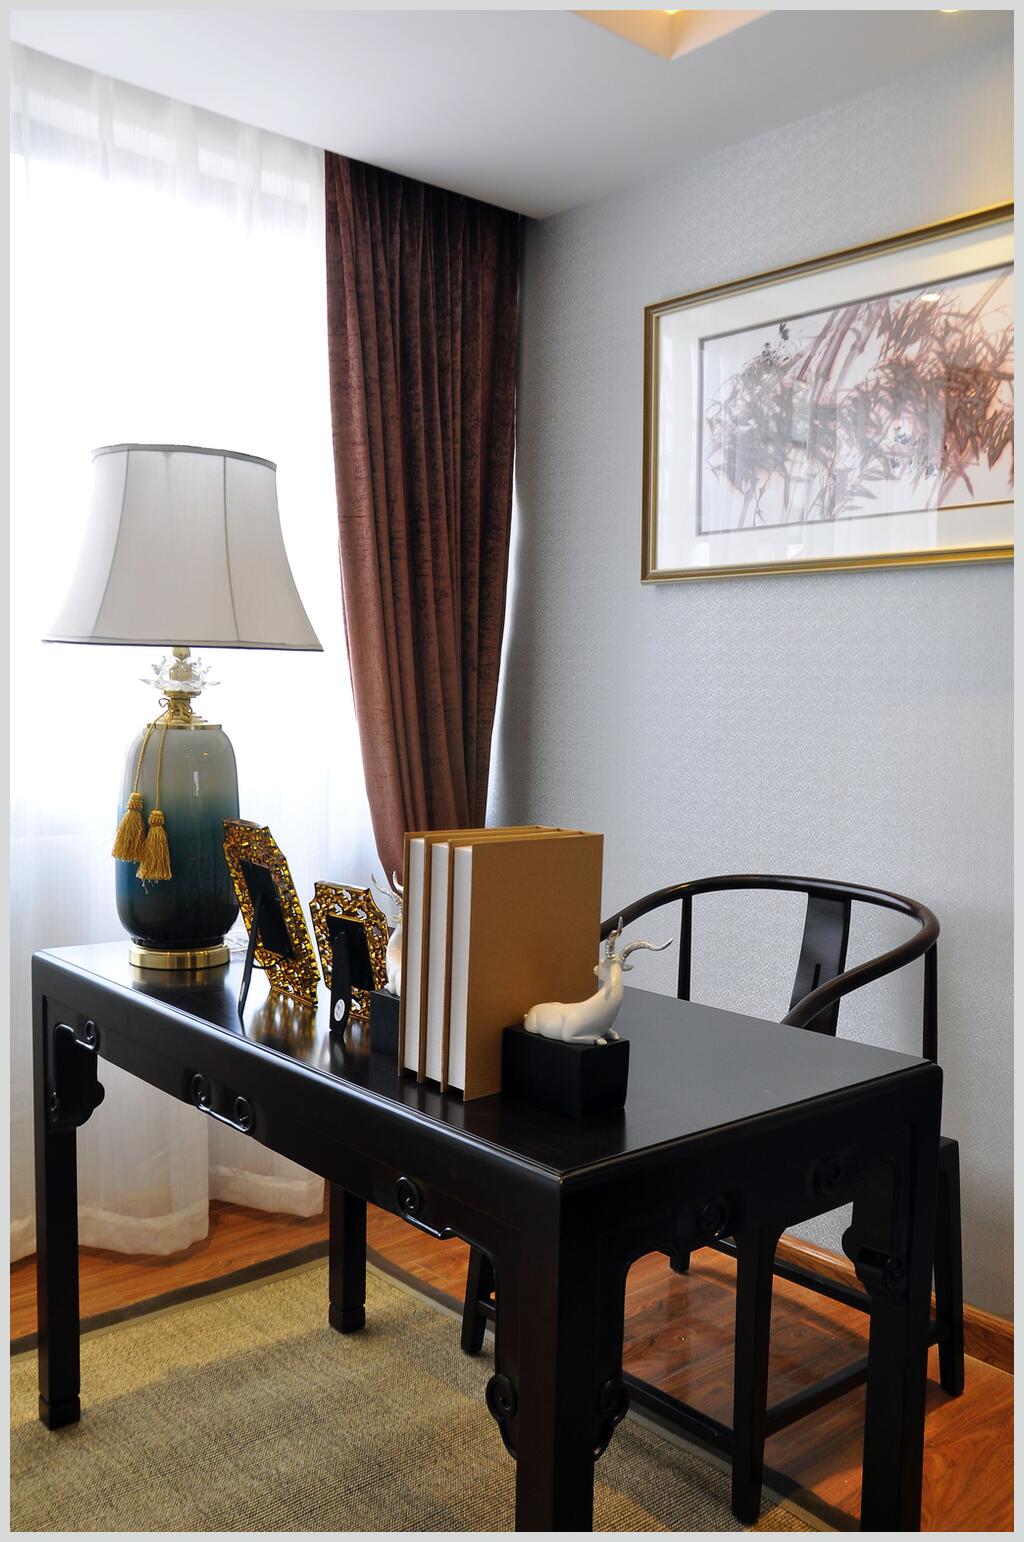 书房木制书桌椅新中式室内图片立即下载整齐摆放的餐桌椅餐厅装修图片